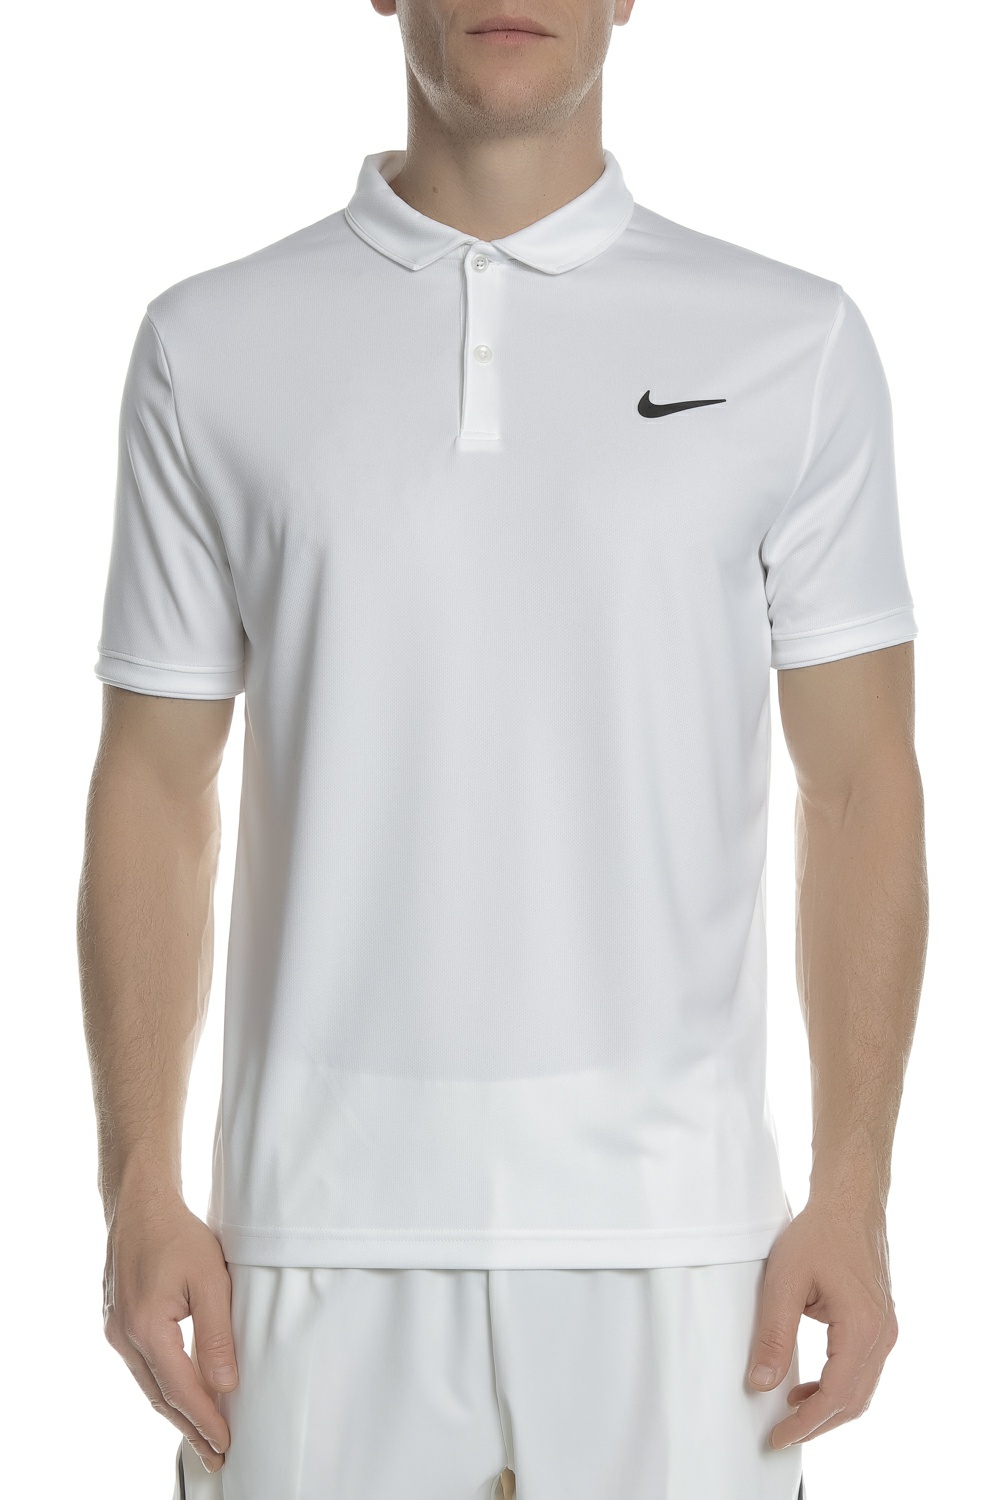 Ανδρικά/Ρούχα/Αθλητικά/T-shirt NIKE - Ανδρική πόλο μπλούζα Nike Court Dry Team Polo λευκή